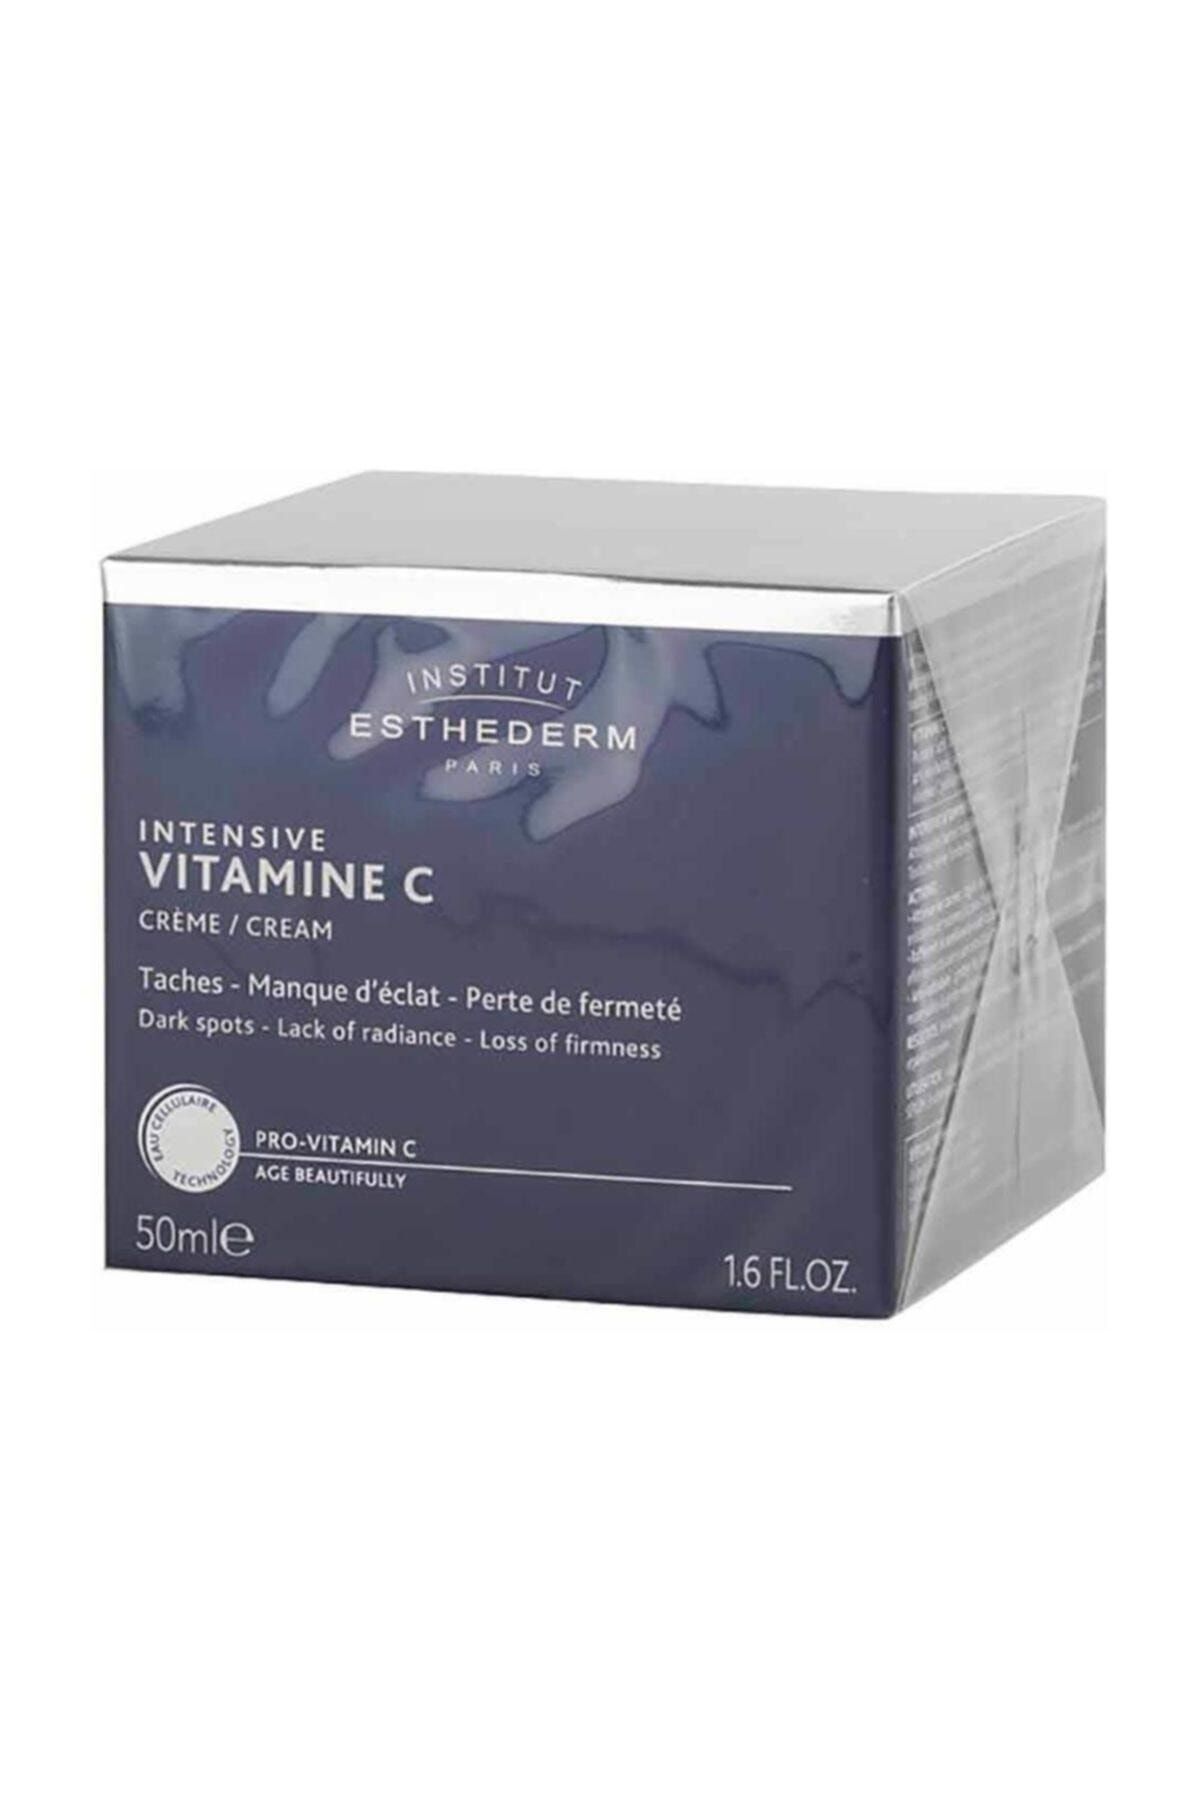 INSTITUT ESTHEDERM Intensive Vitamine C Cream 50ml.